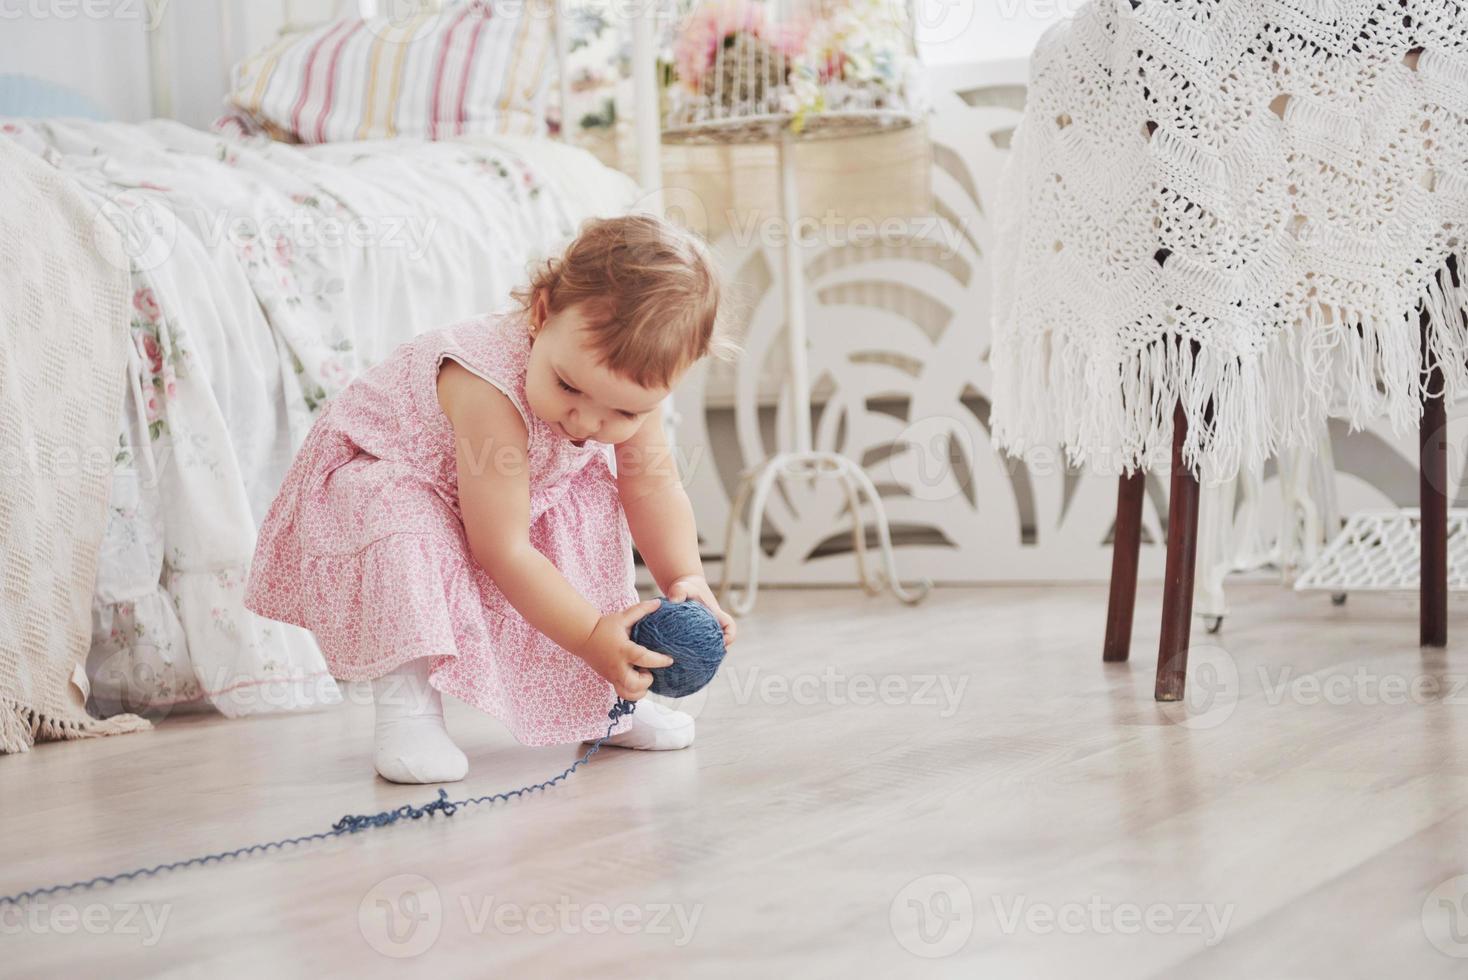 kindertijd concept. babymeisje in schattig jurkje spelen met gekleurde draad. witte vintage kinderkamer foto